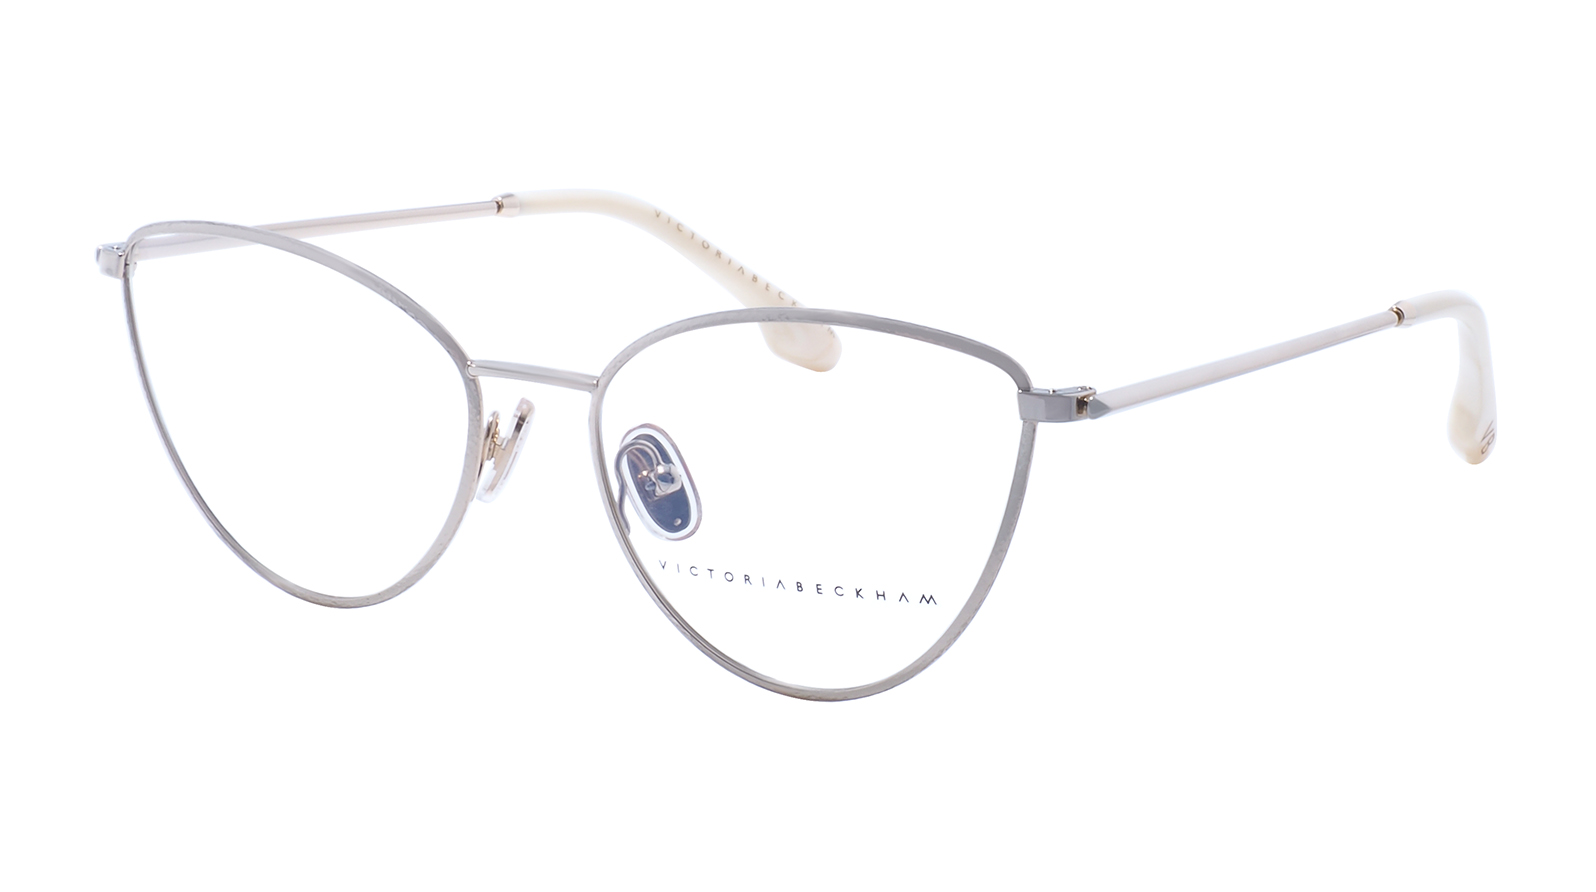 Viictoria Beckham 2113 756 готовые очки moct для зрения с диоптриями 2 5 женские корригирующие для чтения